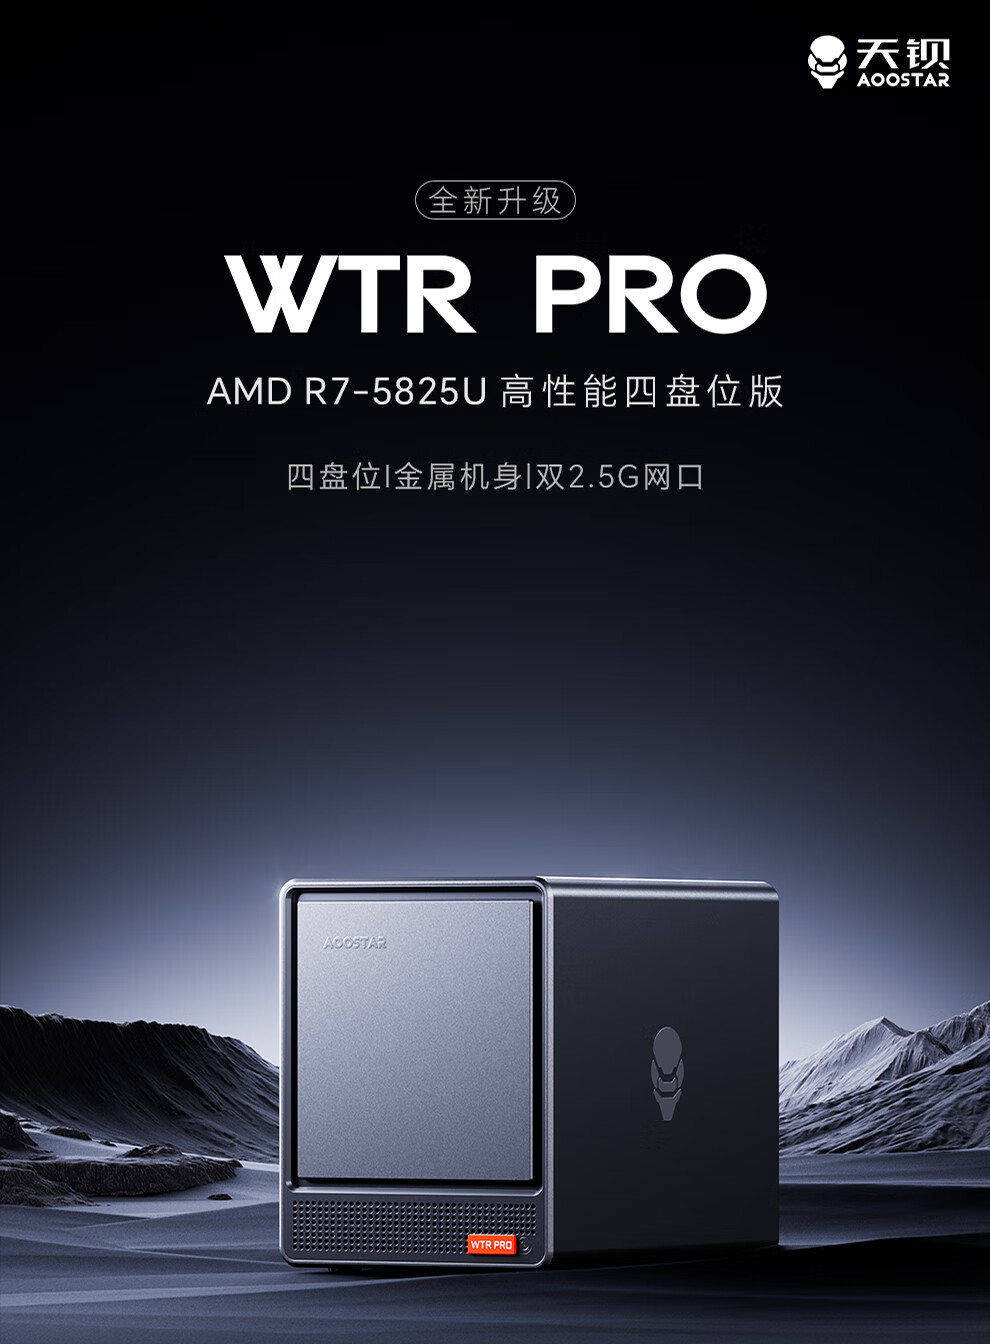 天钡推出 NAS 型迷你主机 WTR Pro：AMD 锐龙 R7-5825U 准系统 1899 元，双 2.5G 网口